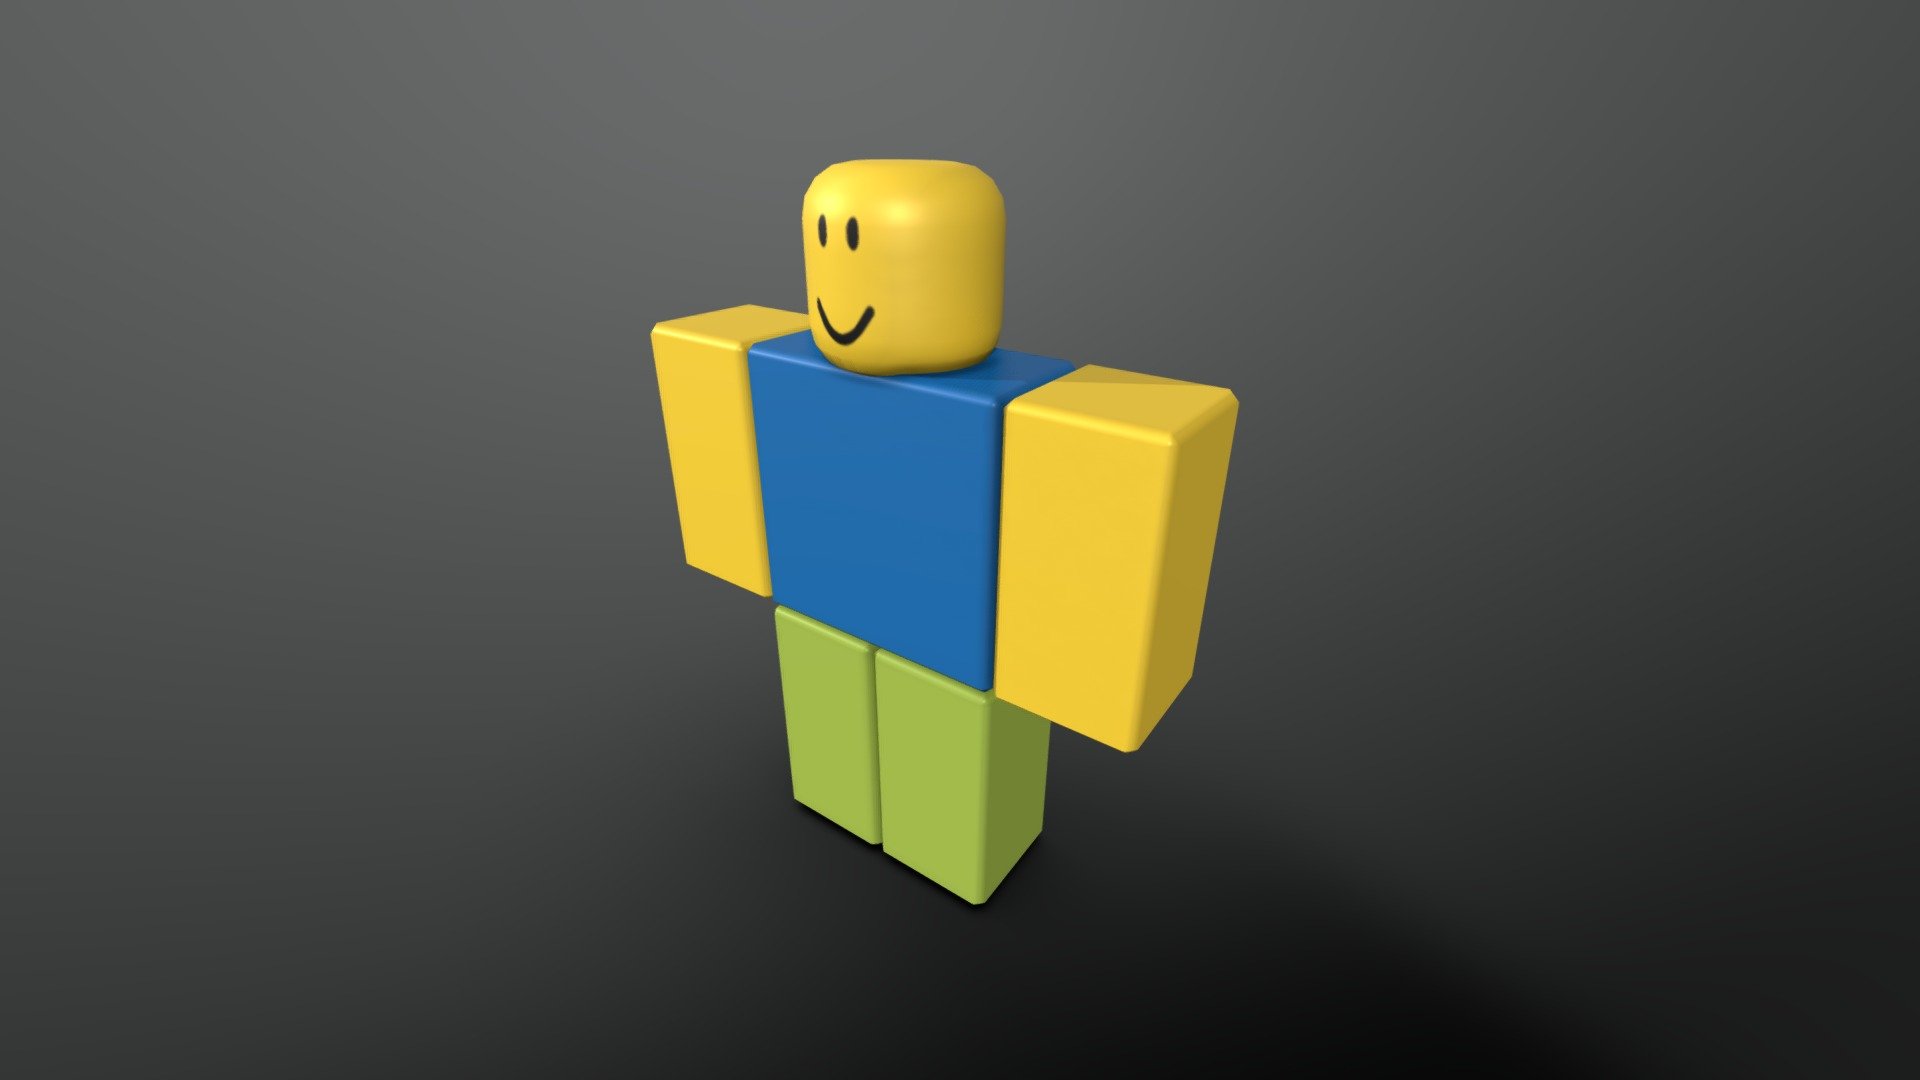 Roblox Noob - Download Free 3D model by vanyabro85 (@vanyabro85) [adbbe79]